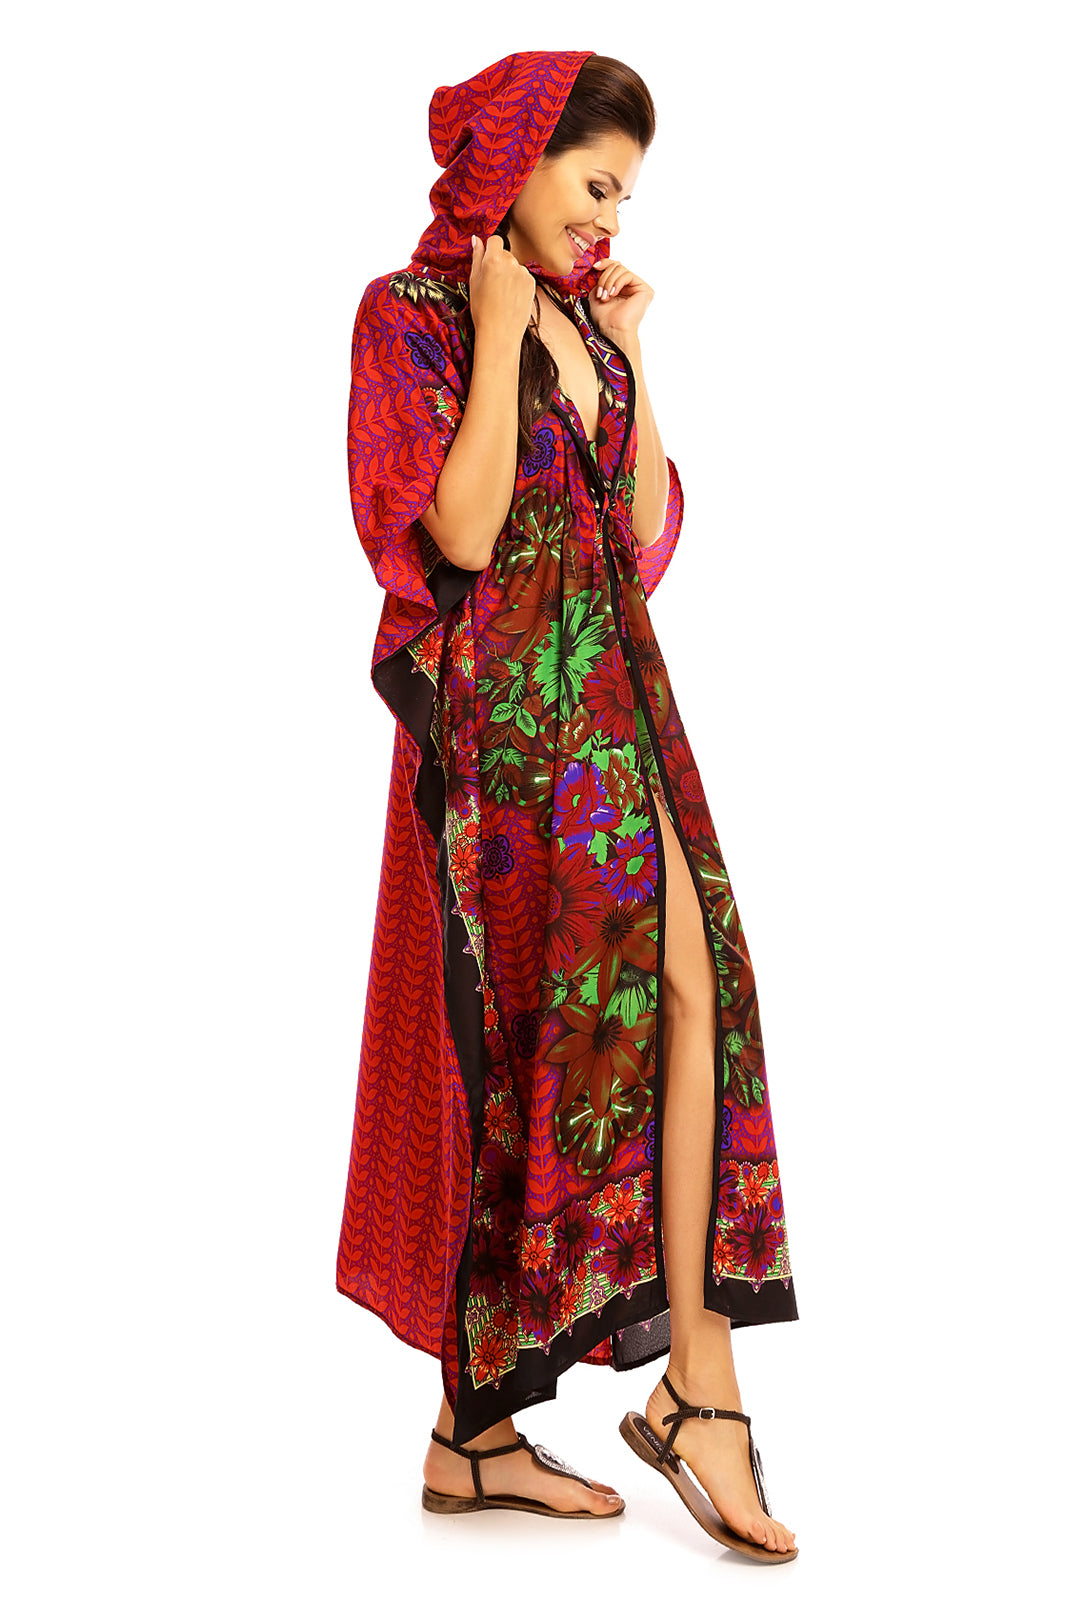 Ladies Hooded Kimono Gown Kaftan in Tribal Print  -  Purple - Pack of 12